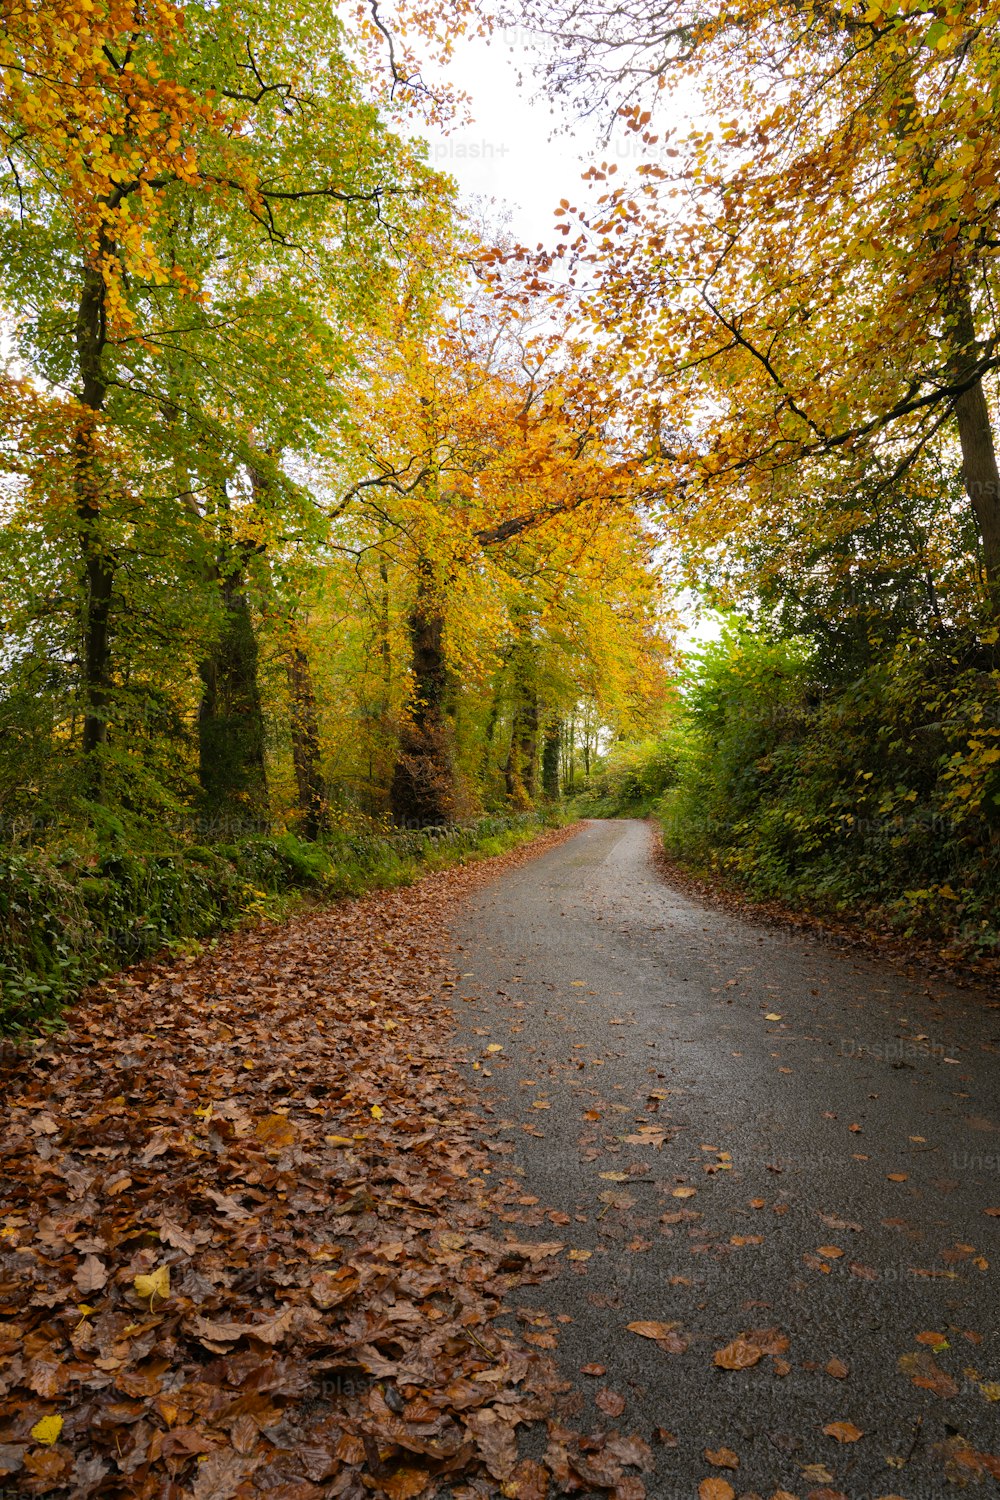 Un camino pavimentado rodeado de árboles con hojas en el suelo